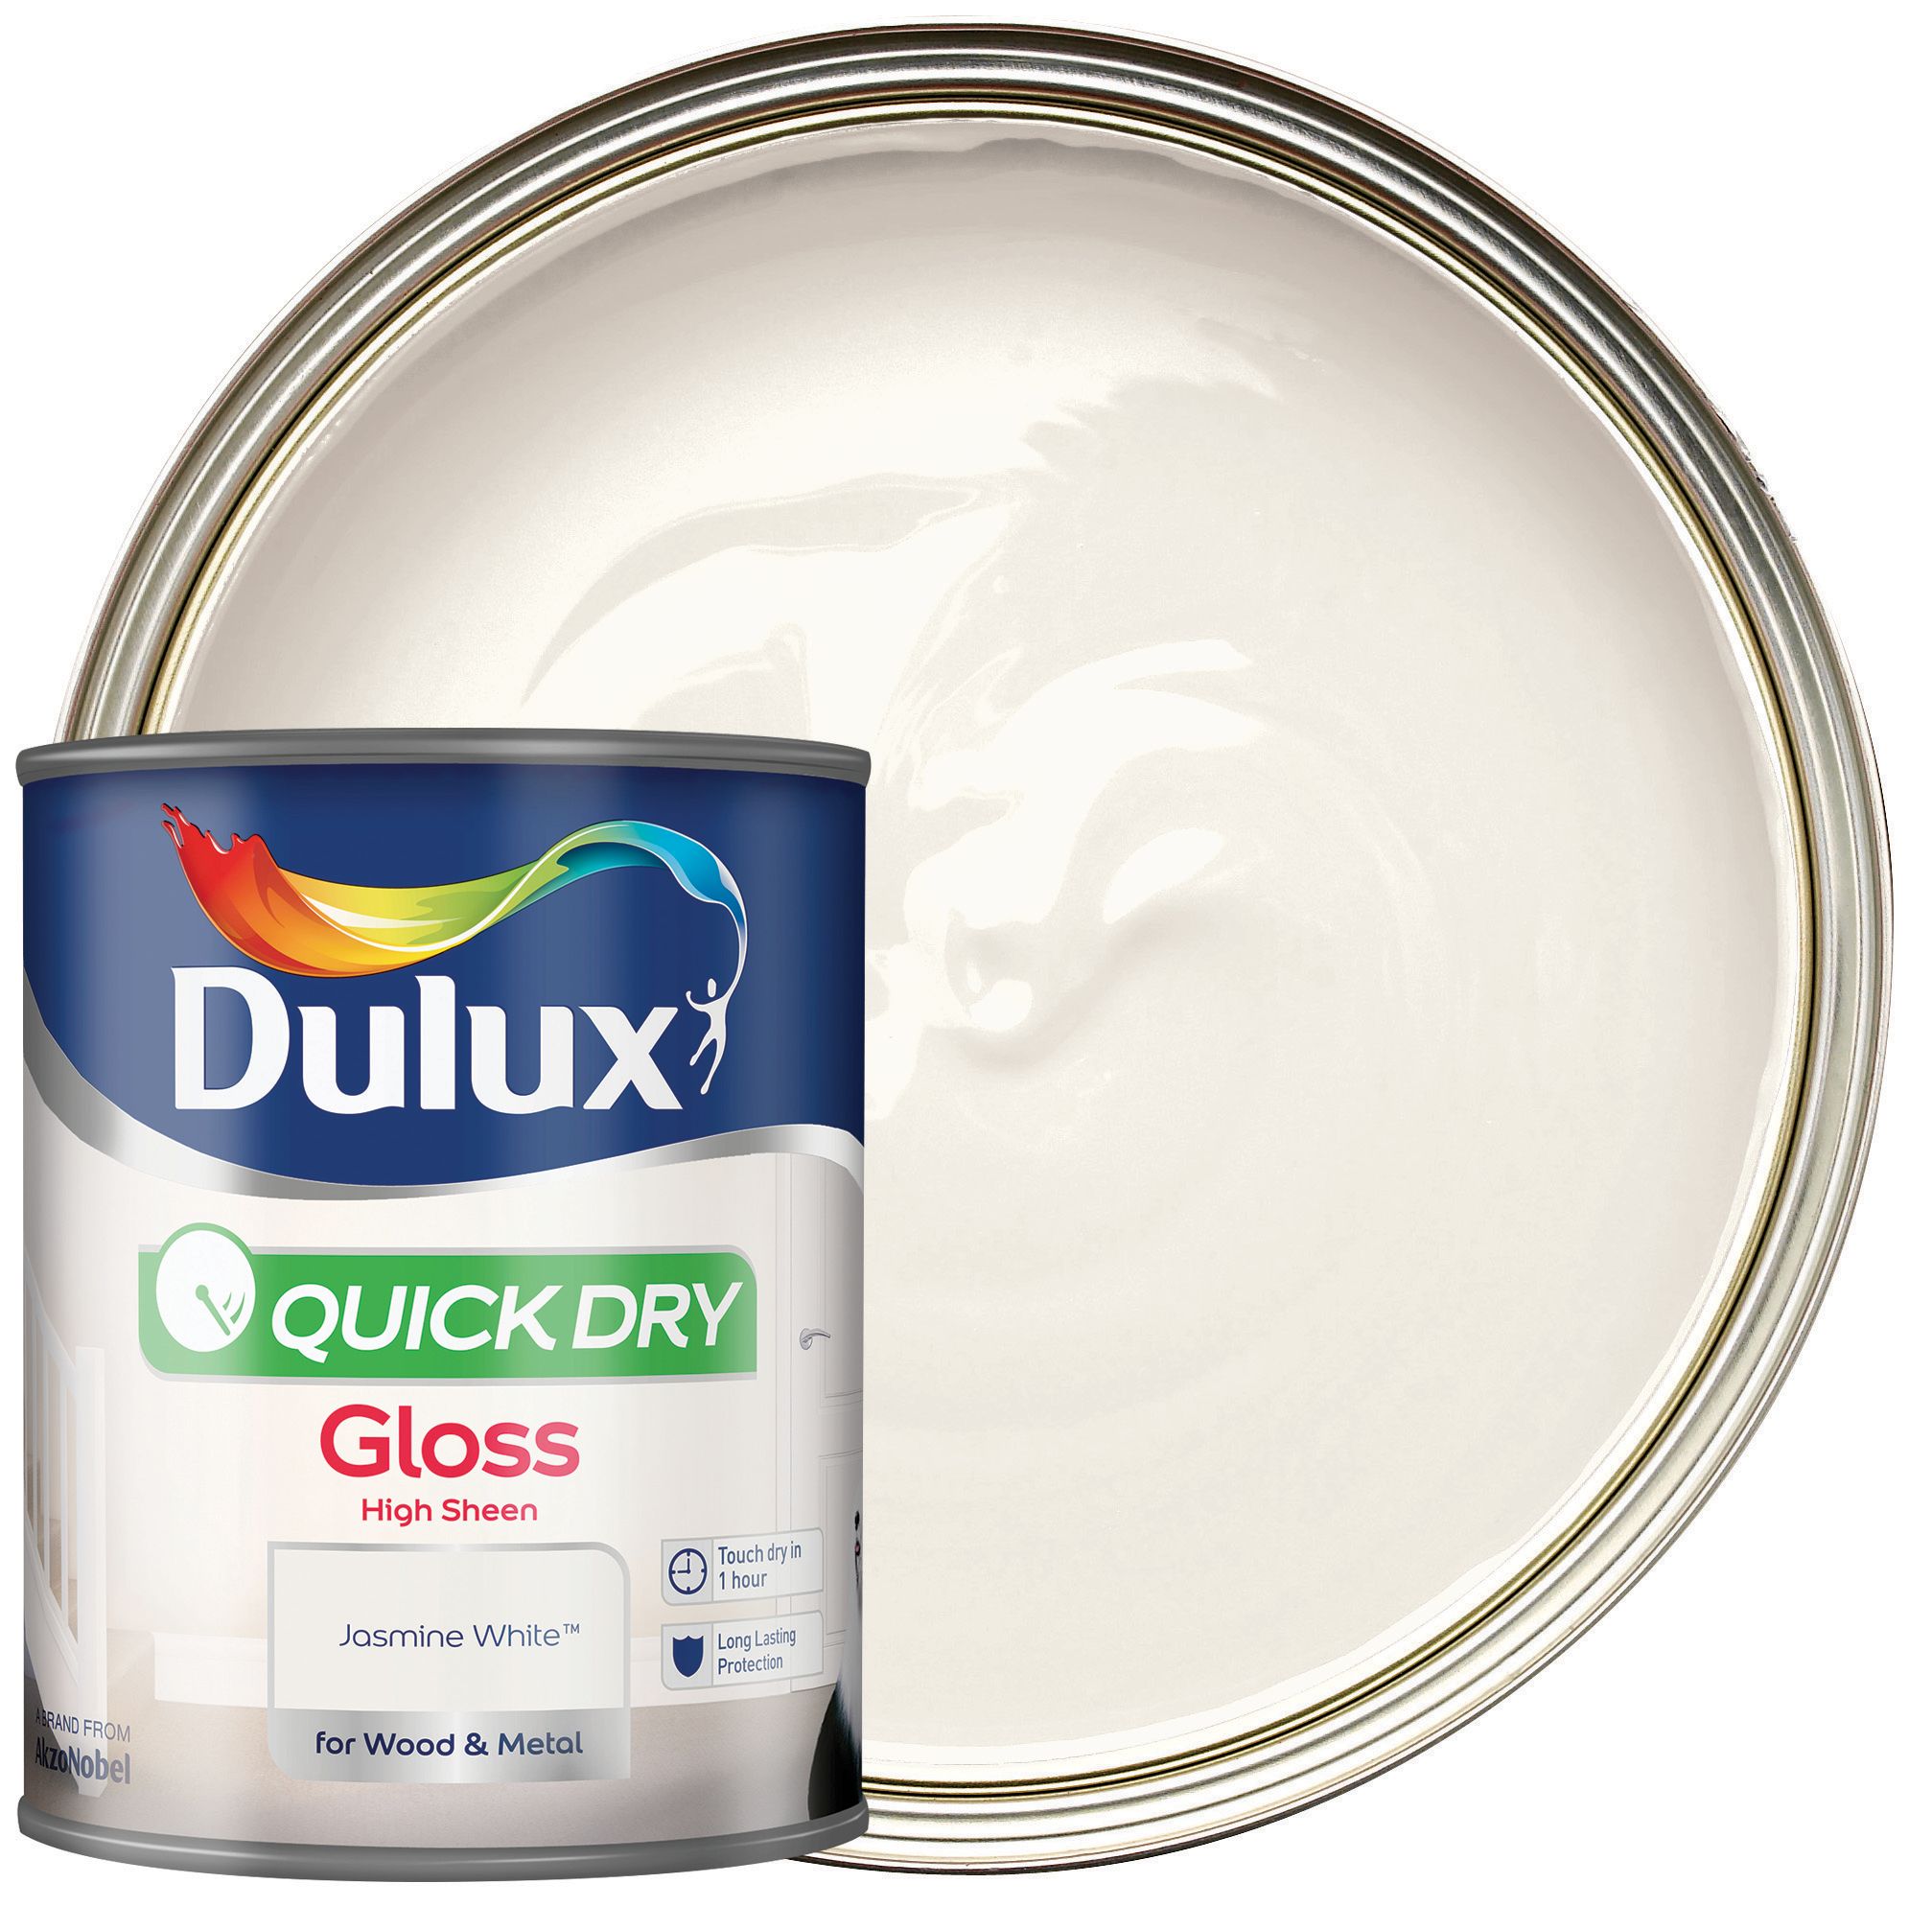 Dulux Quick Dry Gloss Paint - Jasmine White - 750ml